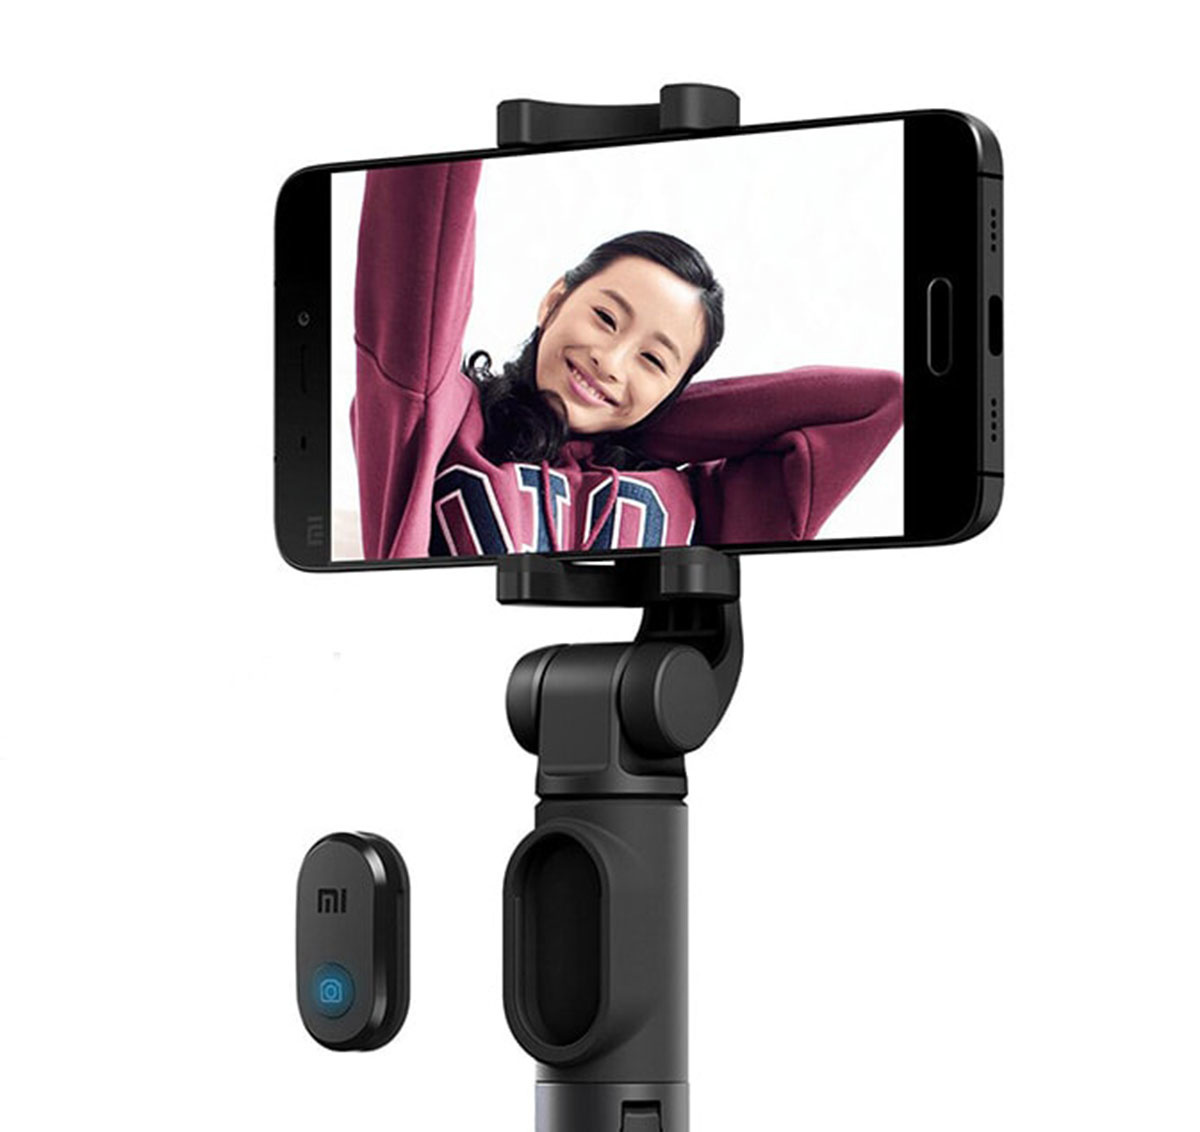 Xiaomi mi bluetooth selfie tripod. Штатив Xiaomi mi selfie Stick Tripod. Монопод-трипод Xiaomi selfie Stick Tripod. Монопод для селфи Xiaomi mi Bluetooth selfie Stick. Монопод-штатив Xiaomi mi Tripod selfie Stick для смартфона xmzpg05ym.